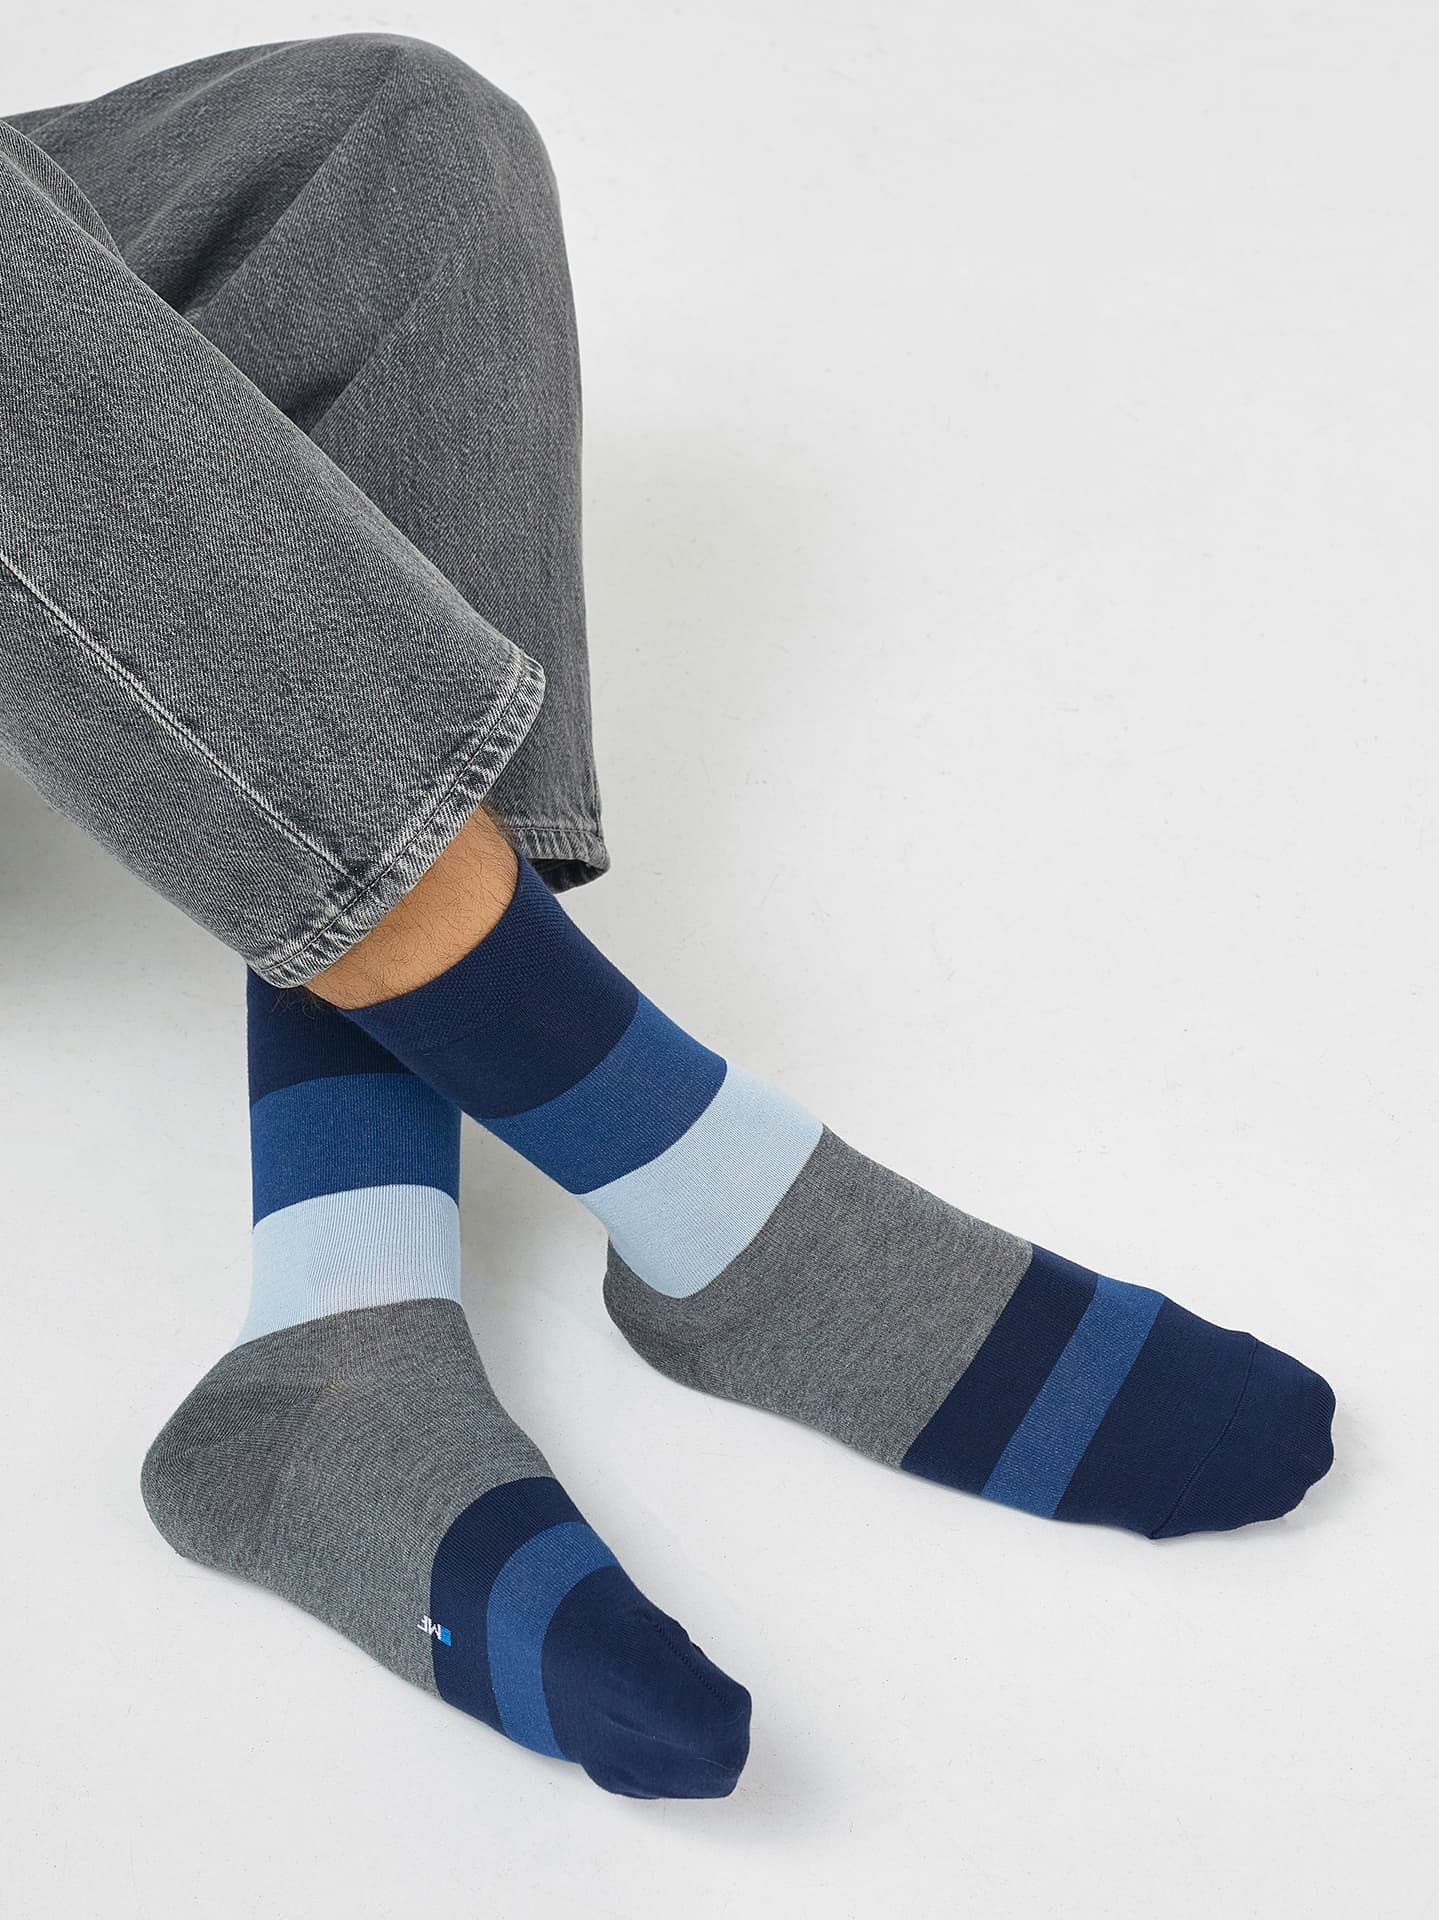 Мужские высокие носки в широкую полоску оттенков синего и серого